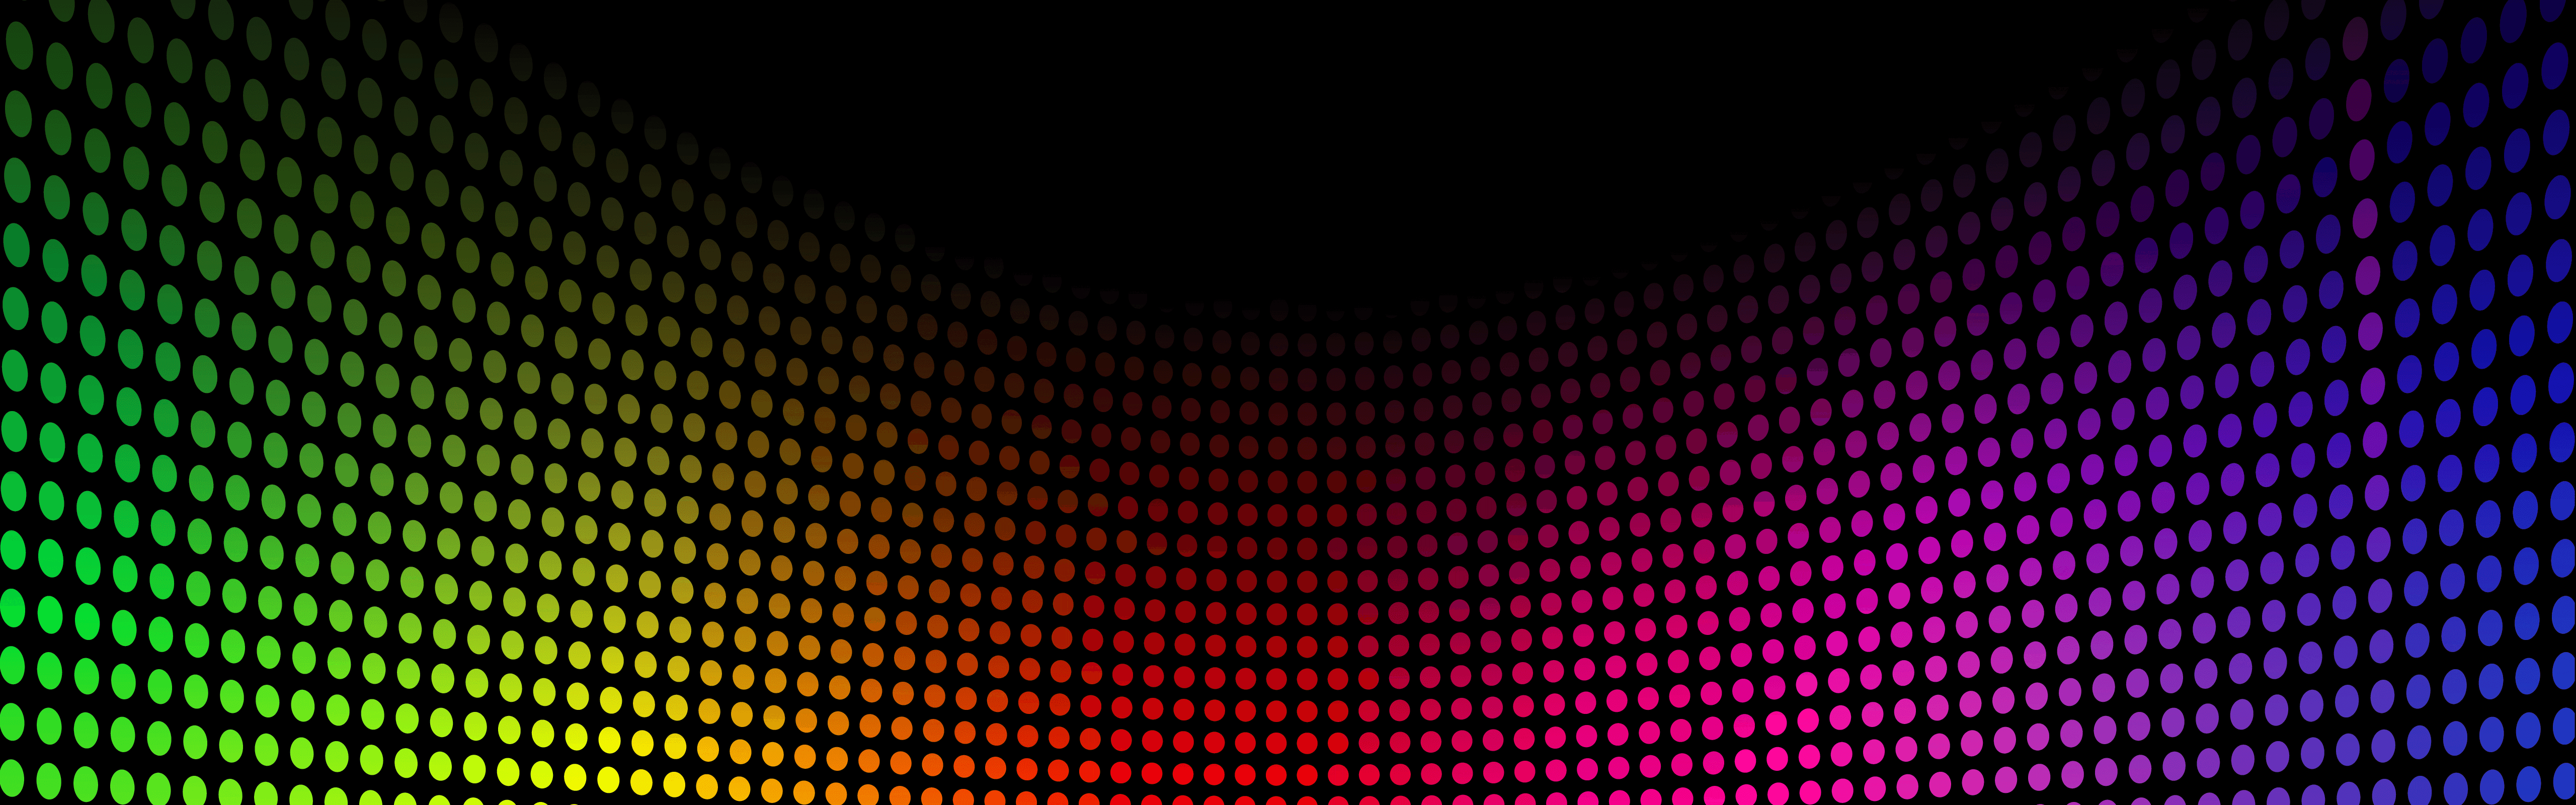 LED 4K Wallpaper Free LED 4K Background